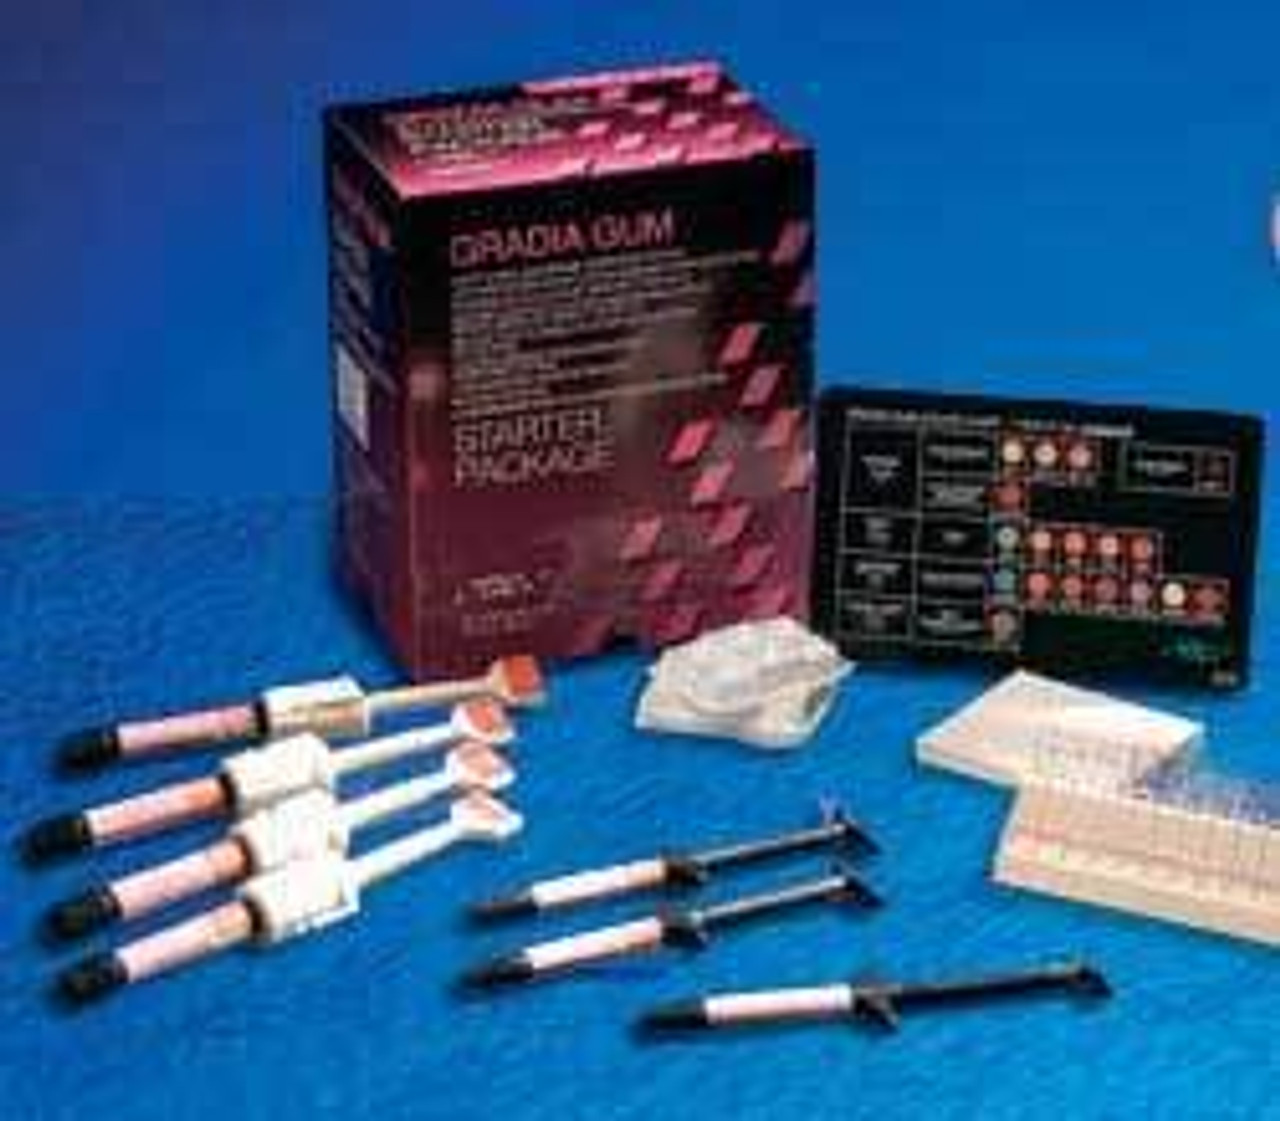 GC Gradia Gum Fiber Gf71.4 G